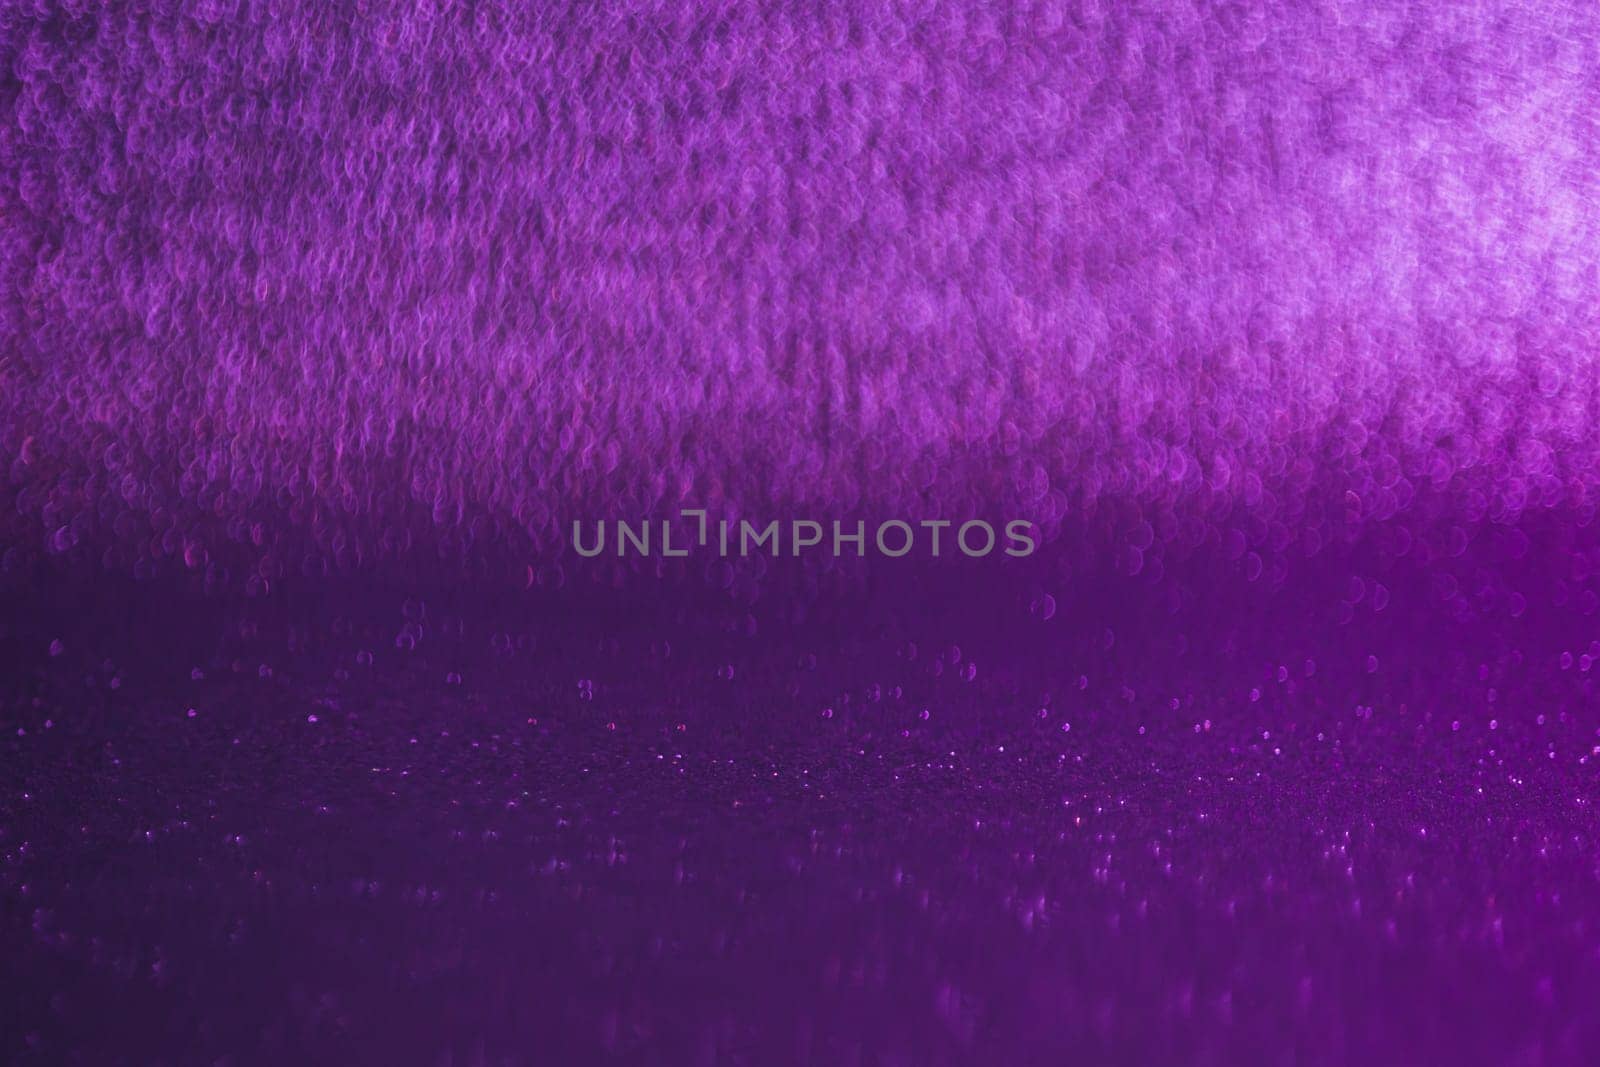 A purple background with a purple and white stripe by Alla_Morozova93